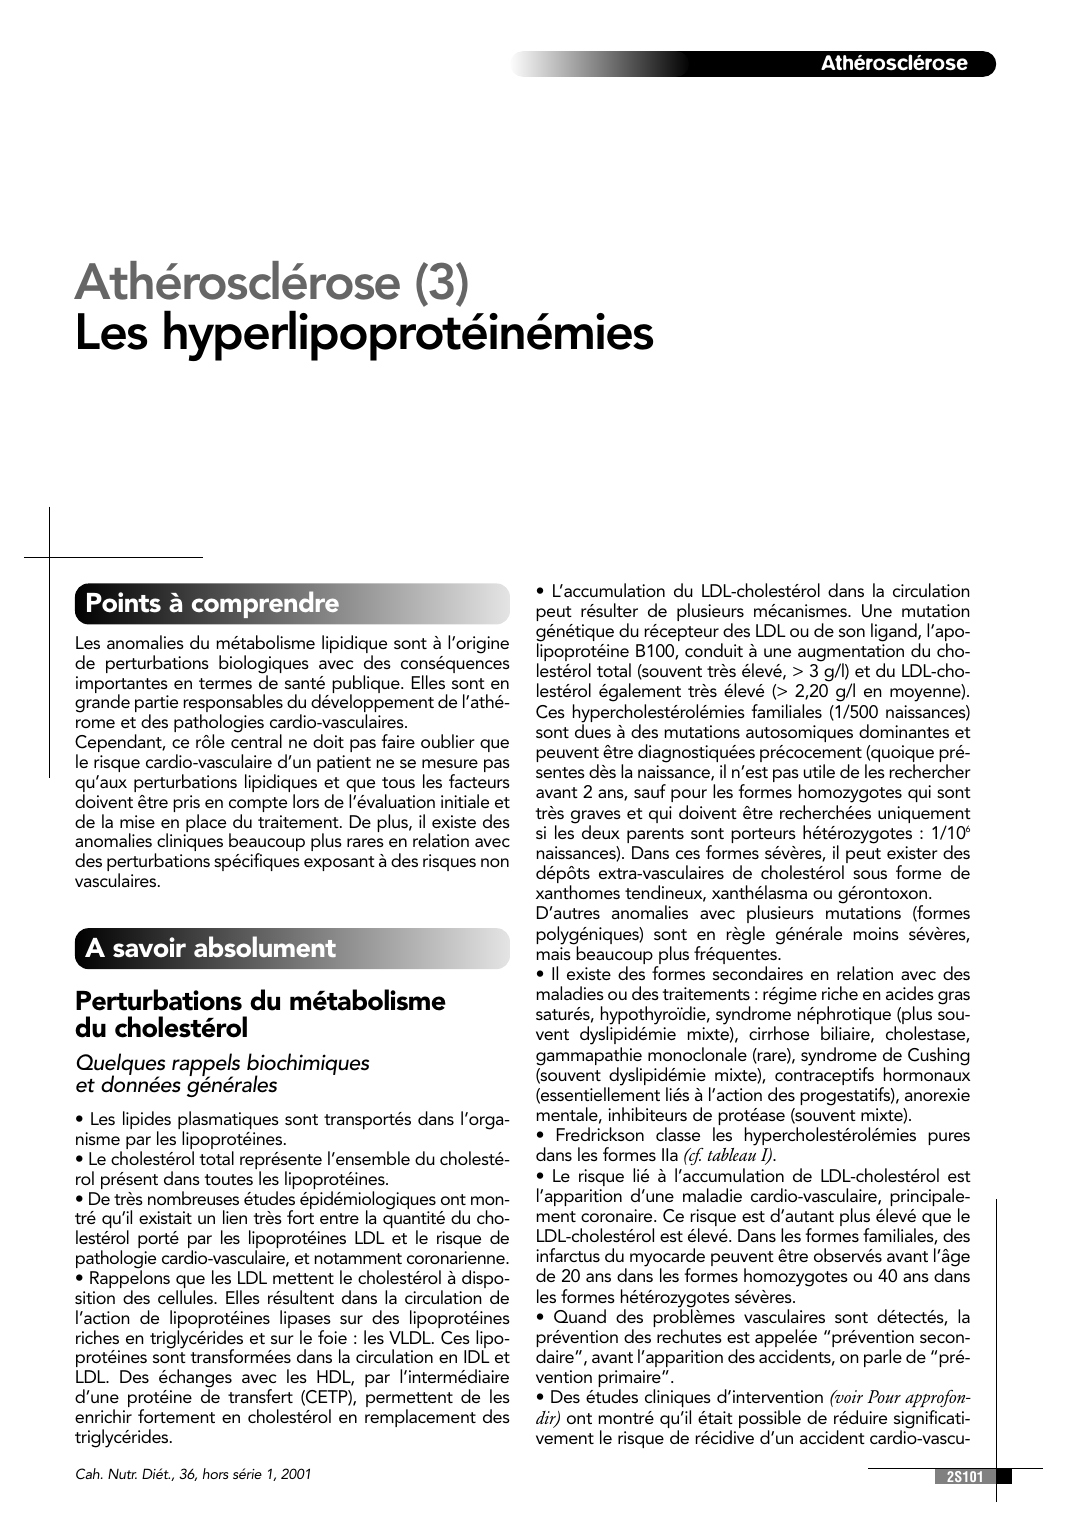 Prévisualisation du document AthéroscléroseAthérosclérose (3)Les hyperlipoprotéinémiesPoints à comprendreLes anomalies du métabolisme lipidique sont à l'originede perturbations biologiques avec des conséquencesimportantes en termes de santé publique.